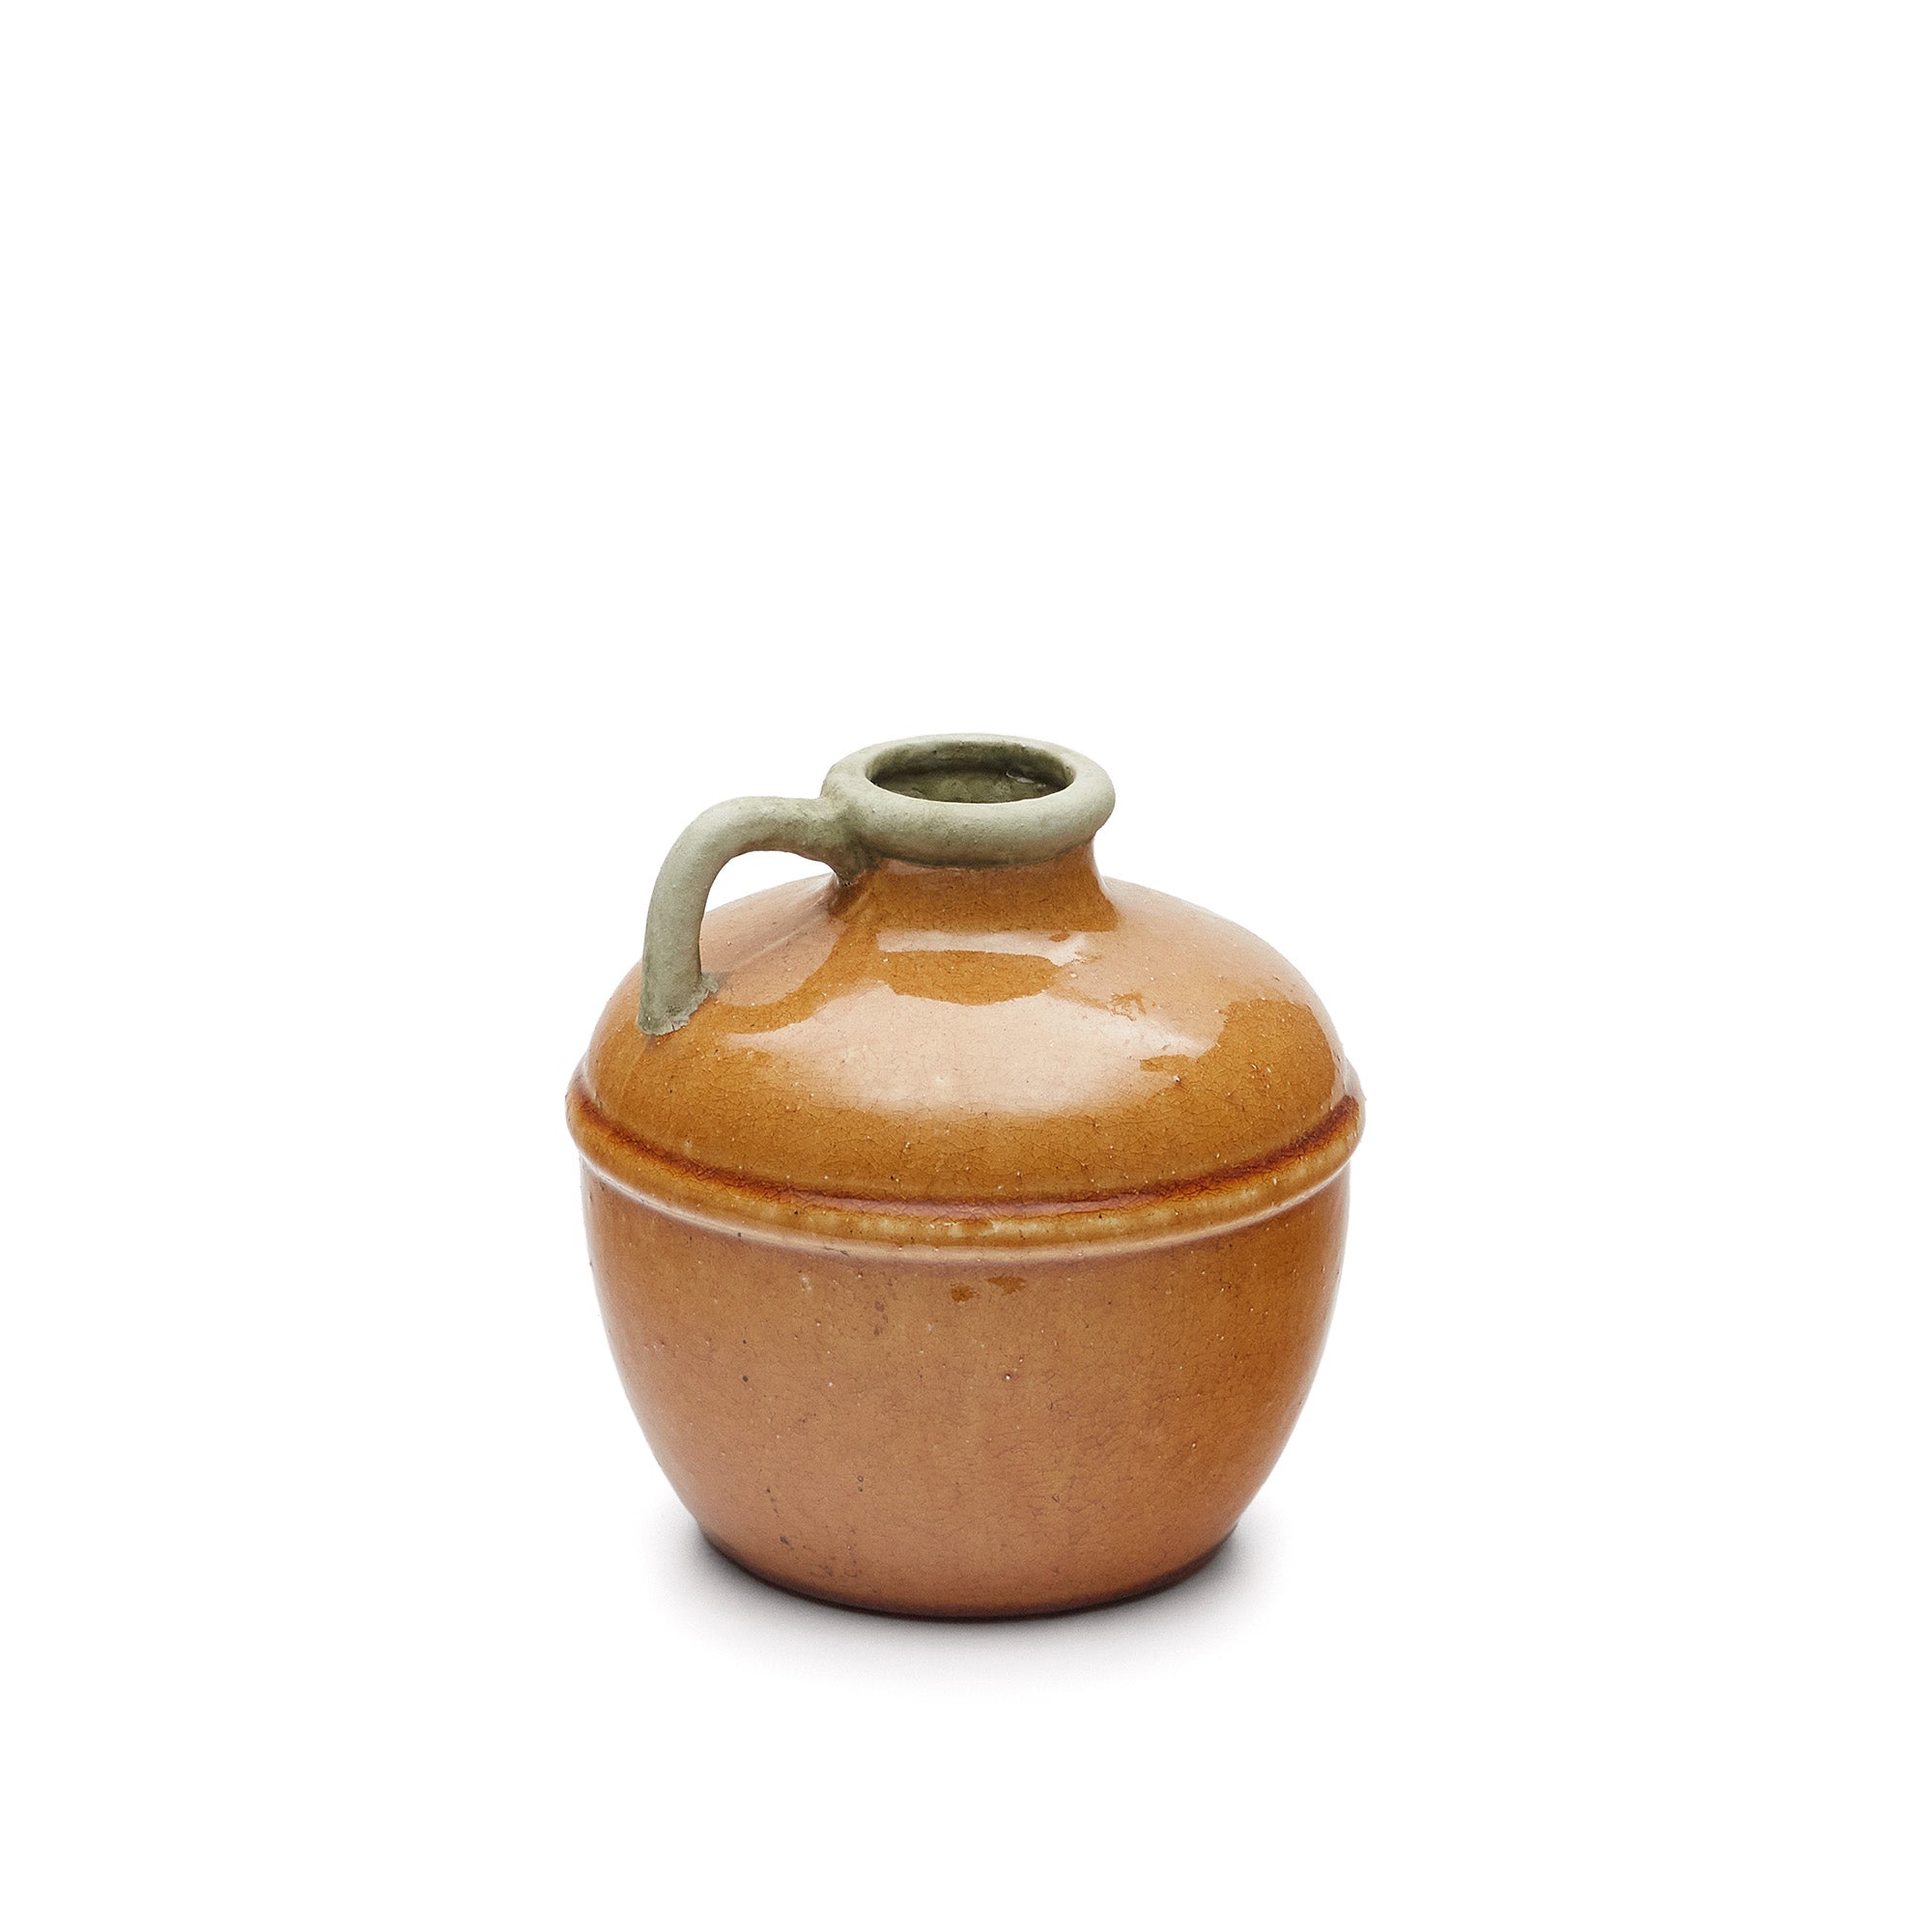 Tamariu ceramic vase in mustard, 19.5 cm